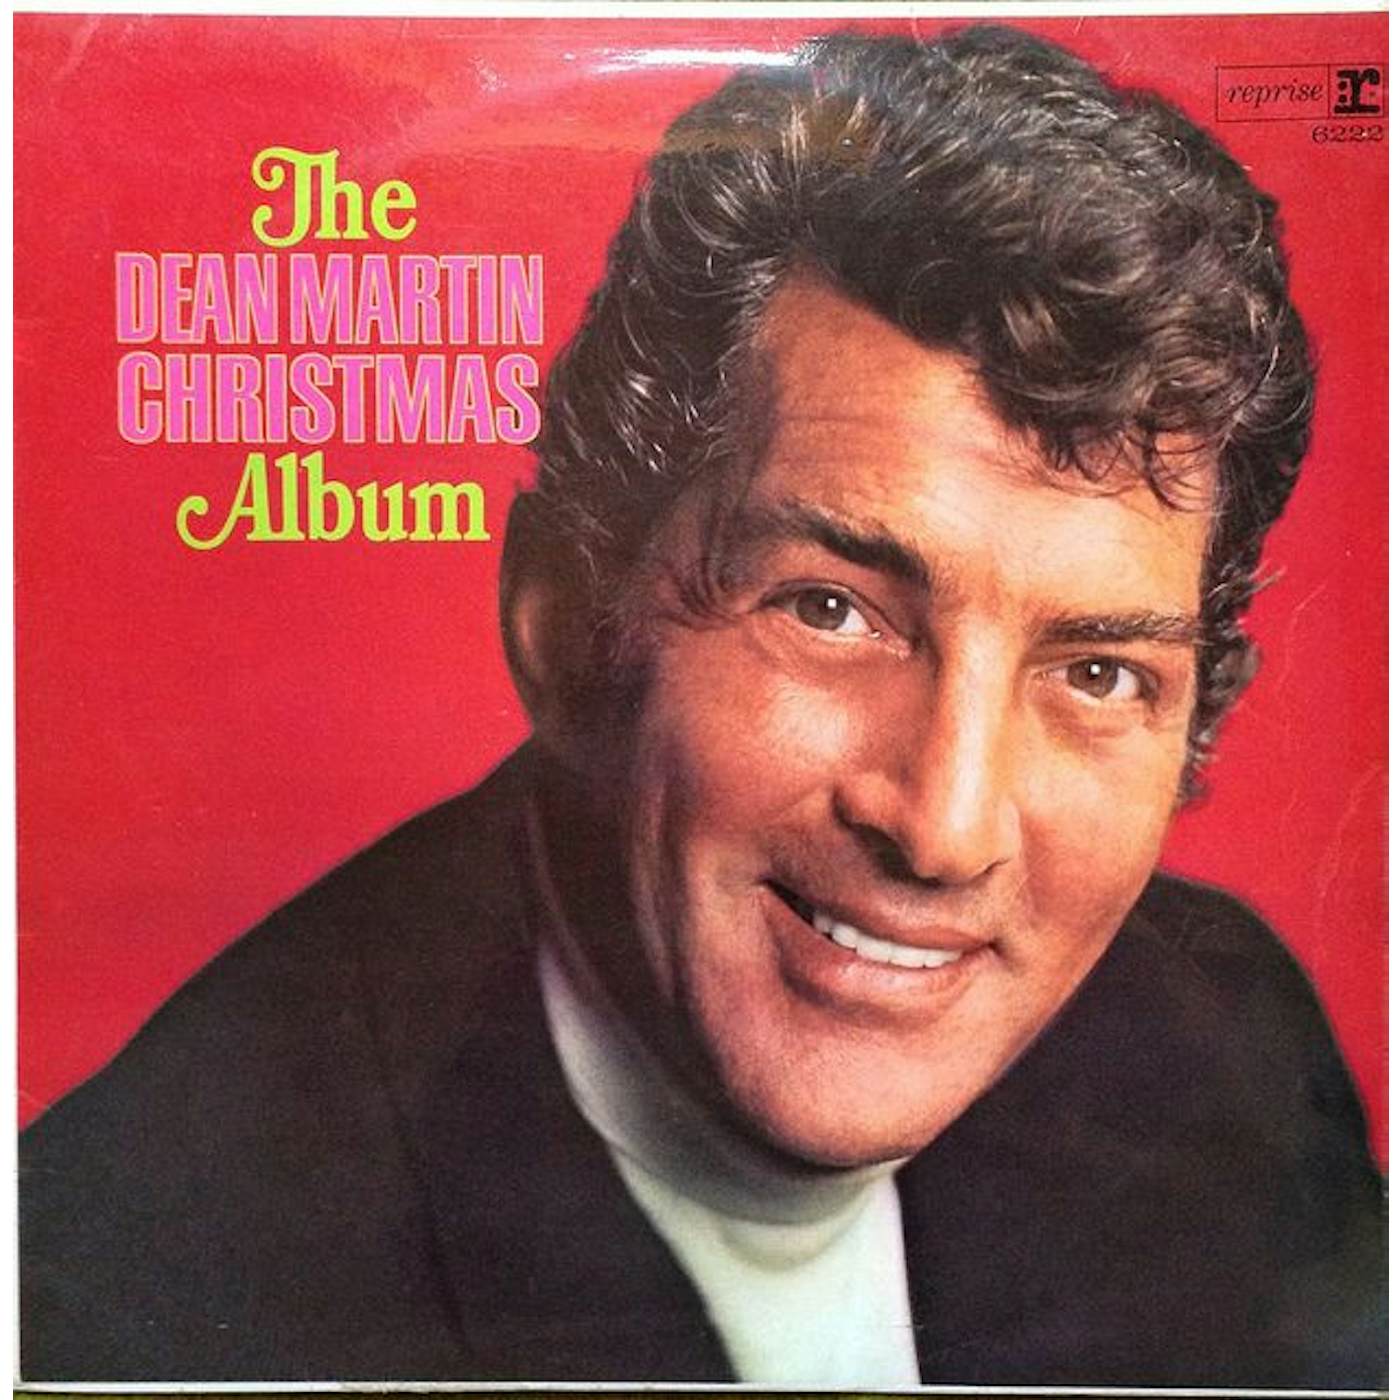 DEAN MARTIN CHRISTMAS ALBUM Vinyl Record